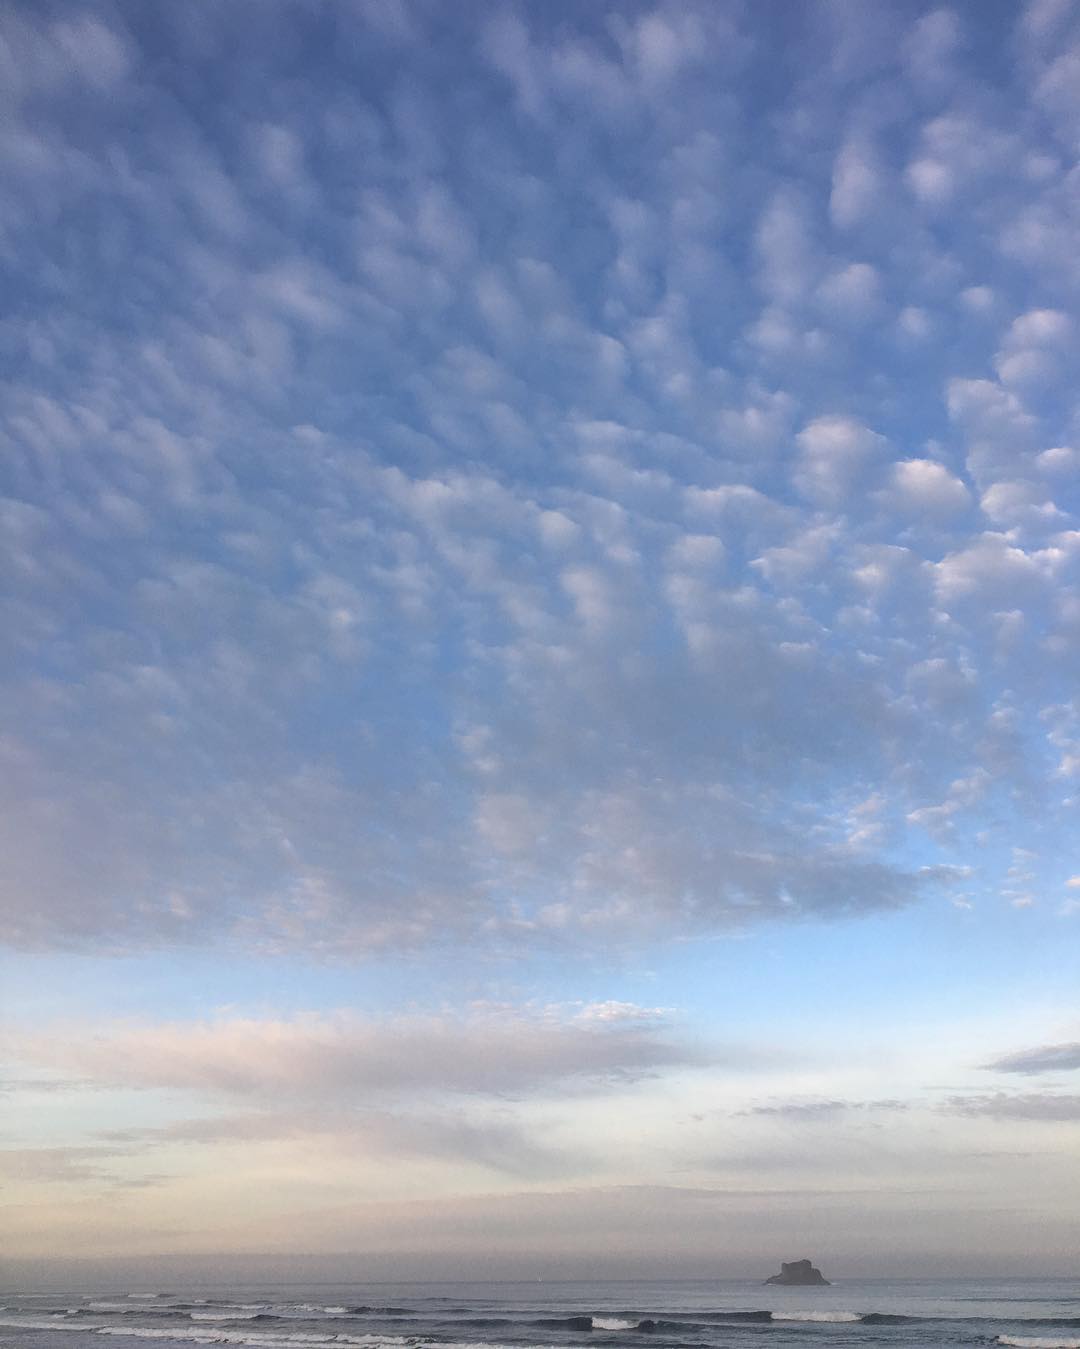 Morning! #castlerock #archcape #iadoregon #clouds